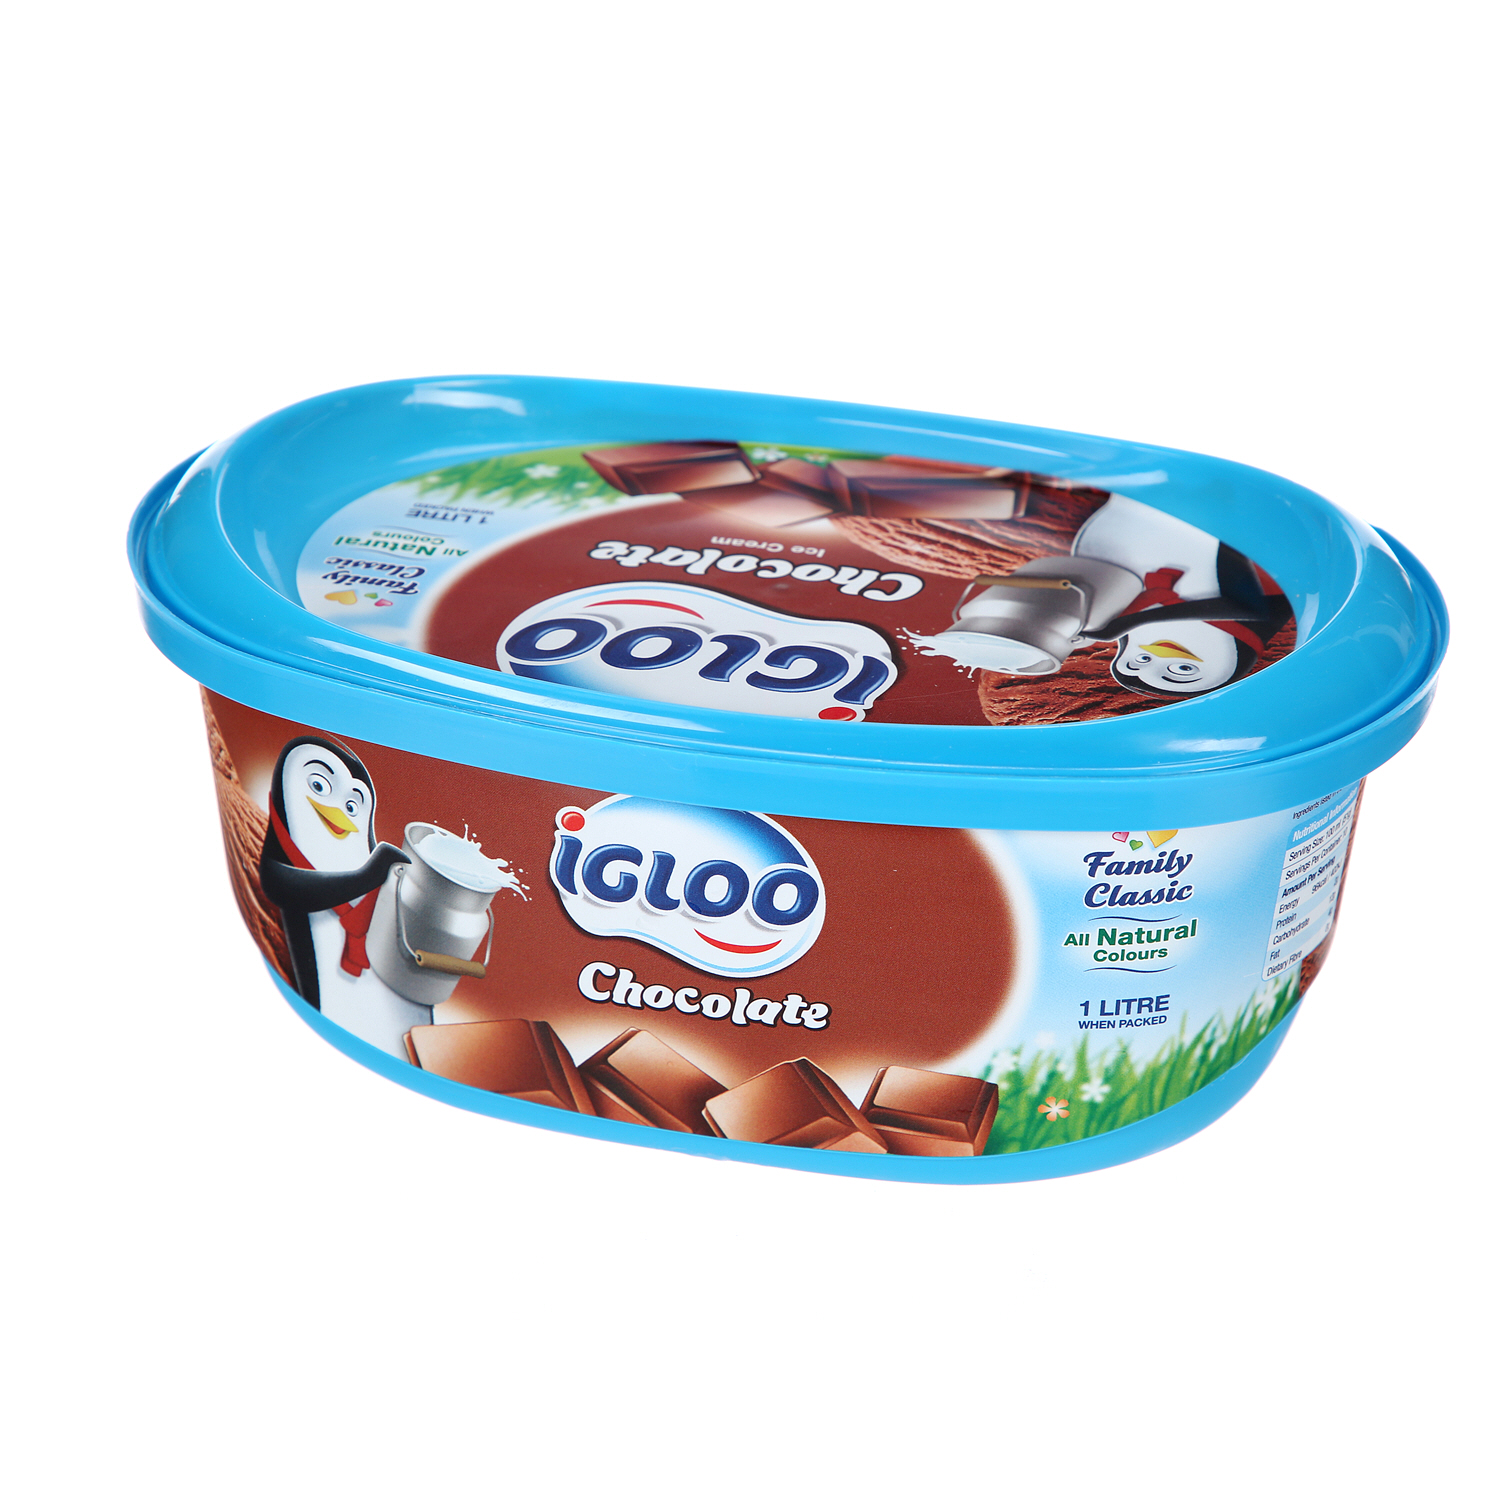 Igloo Chocolate 1Ltr